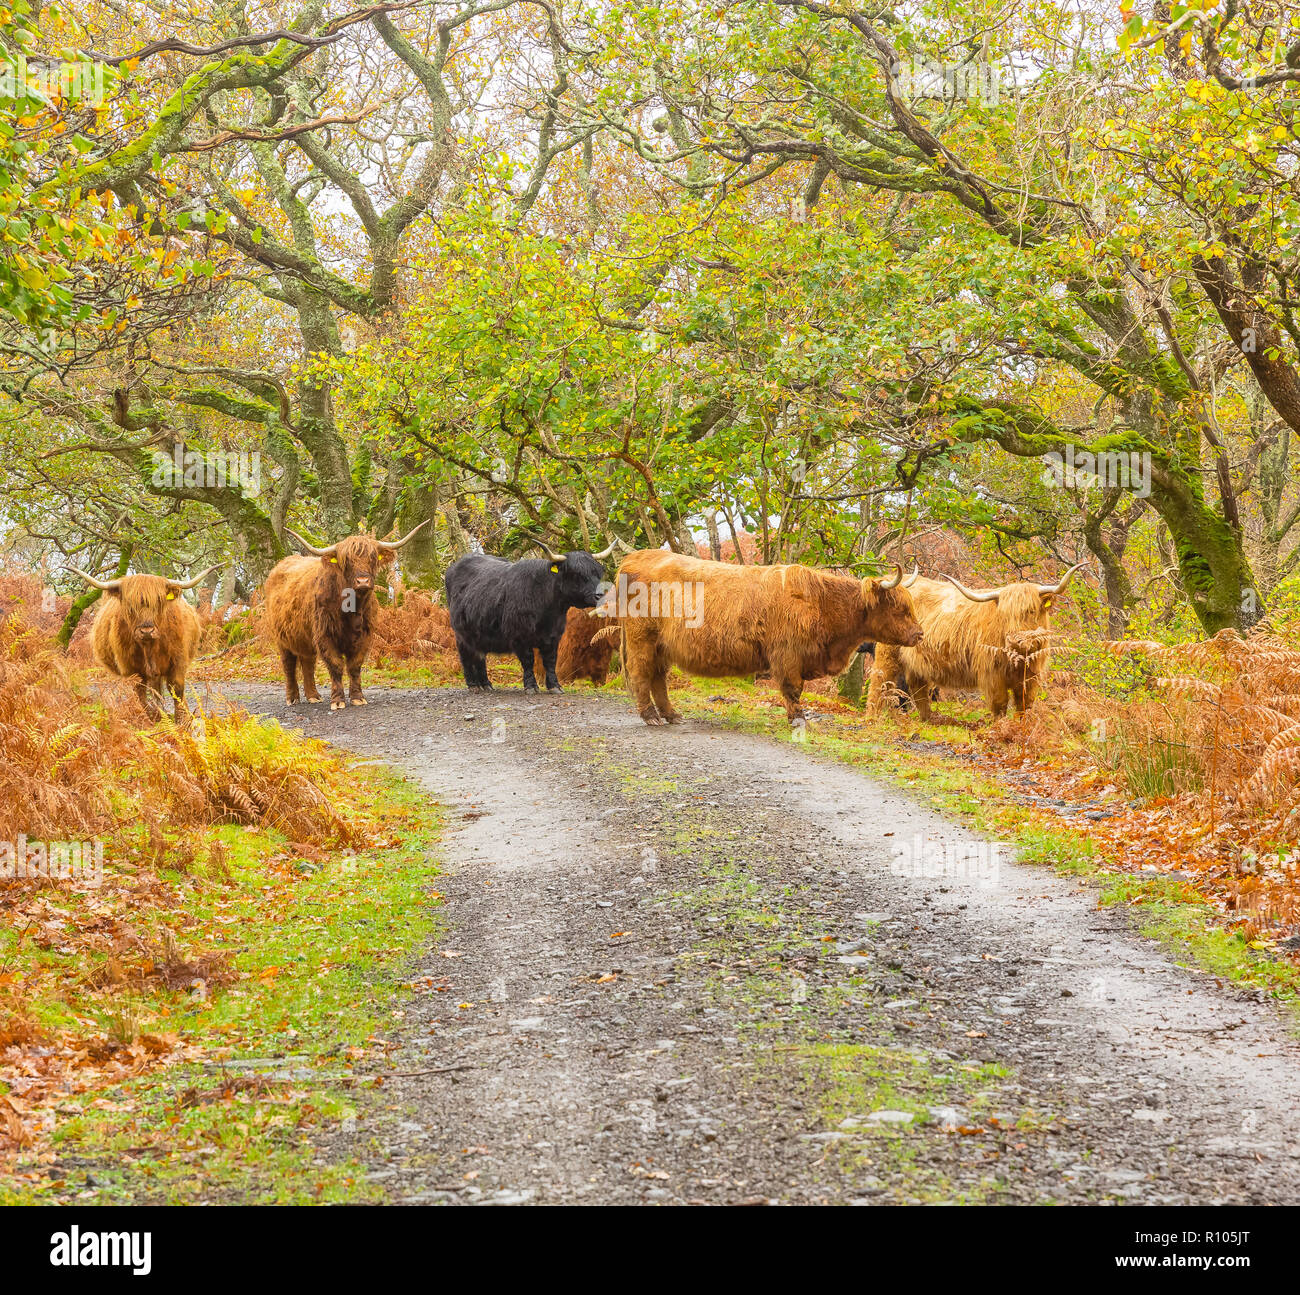 Manada de Highland ganado en la isla de Mull, en las Hébridas interiores, en Escocia, en el Reino Unido durante la temporada de otoño o el otoño con hojas doradas y Bracken. Foto de stock